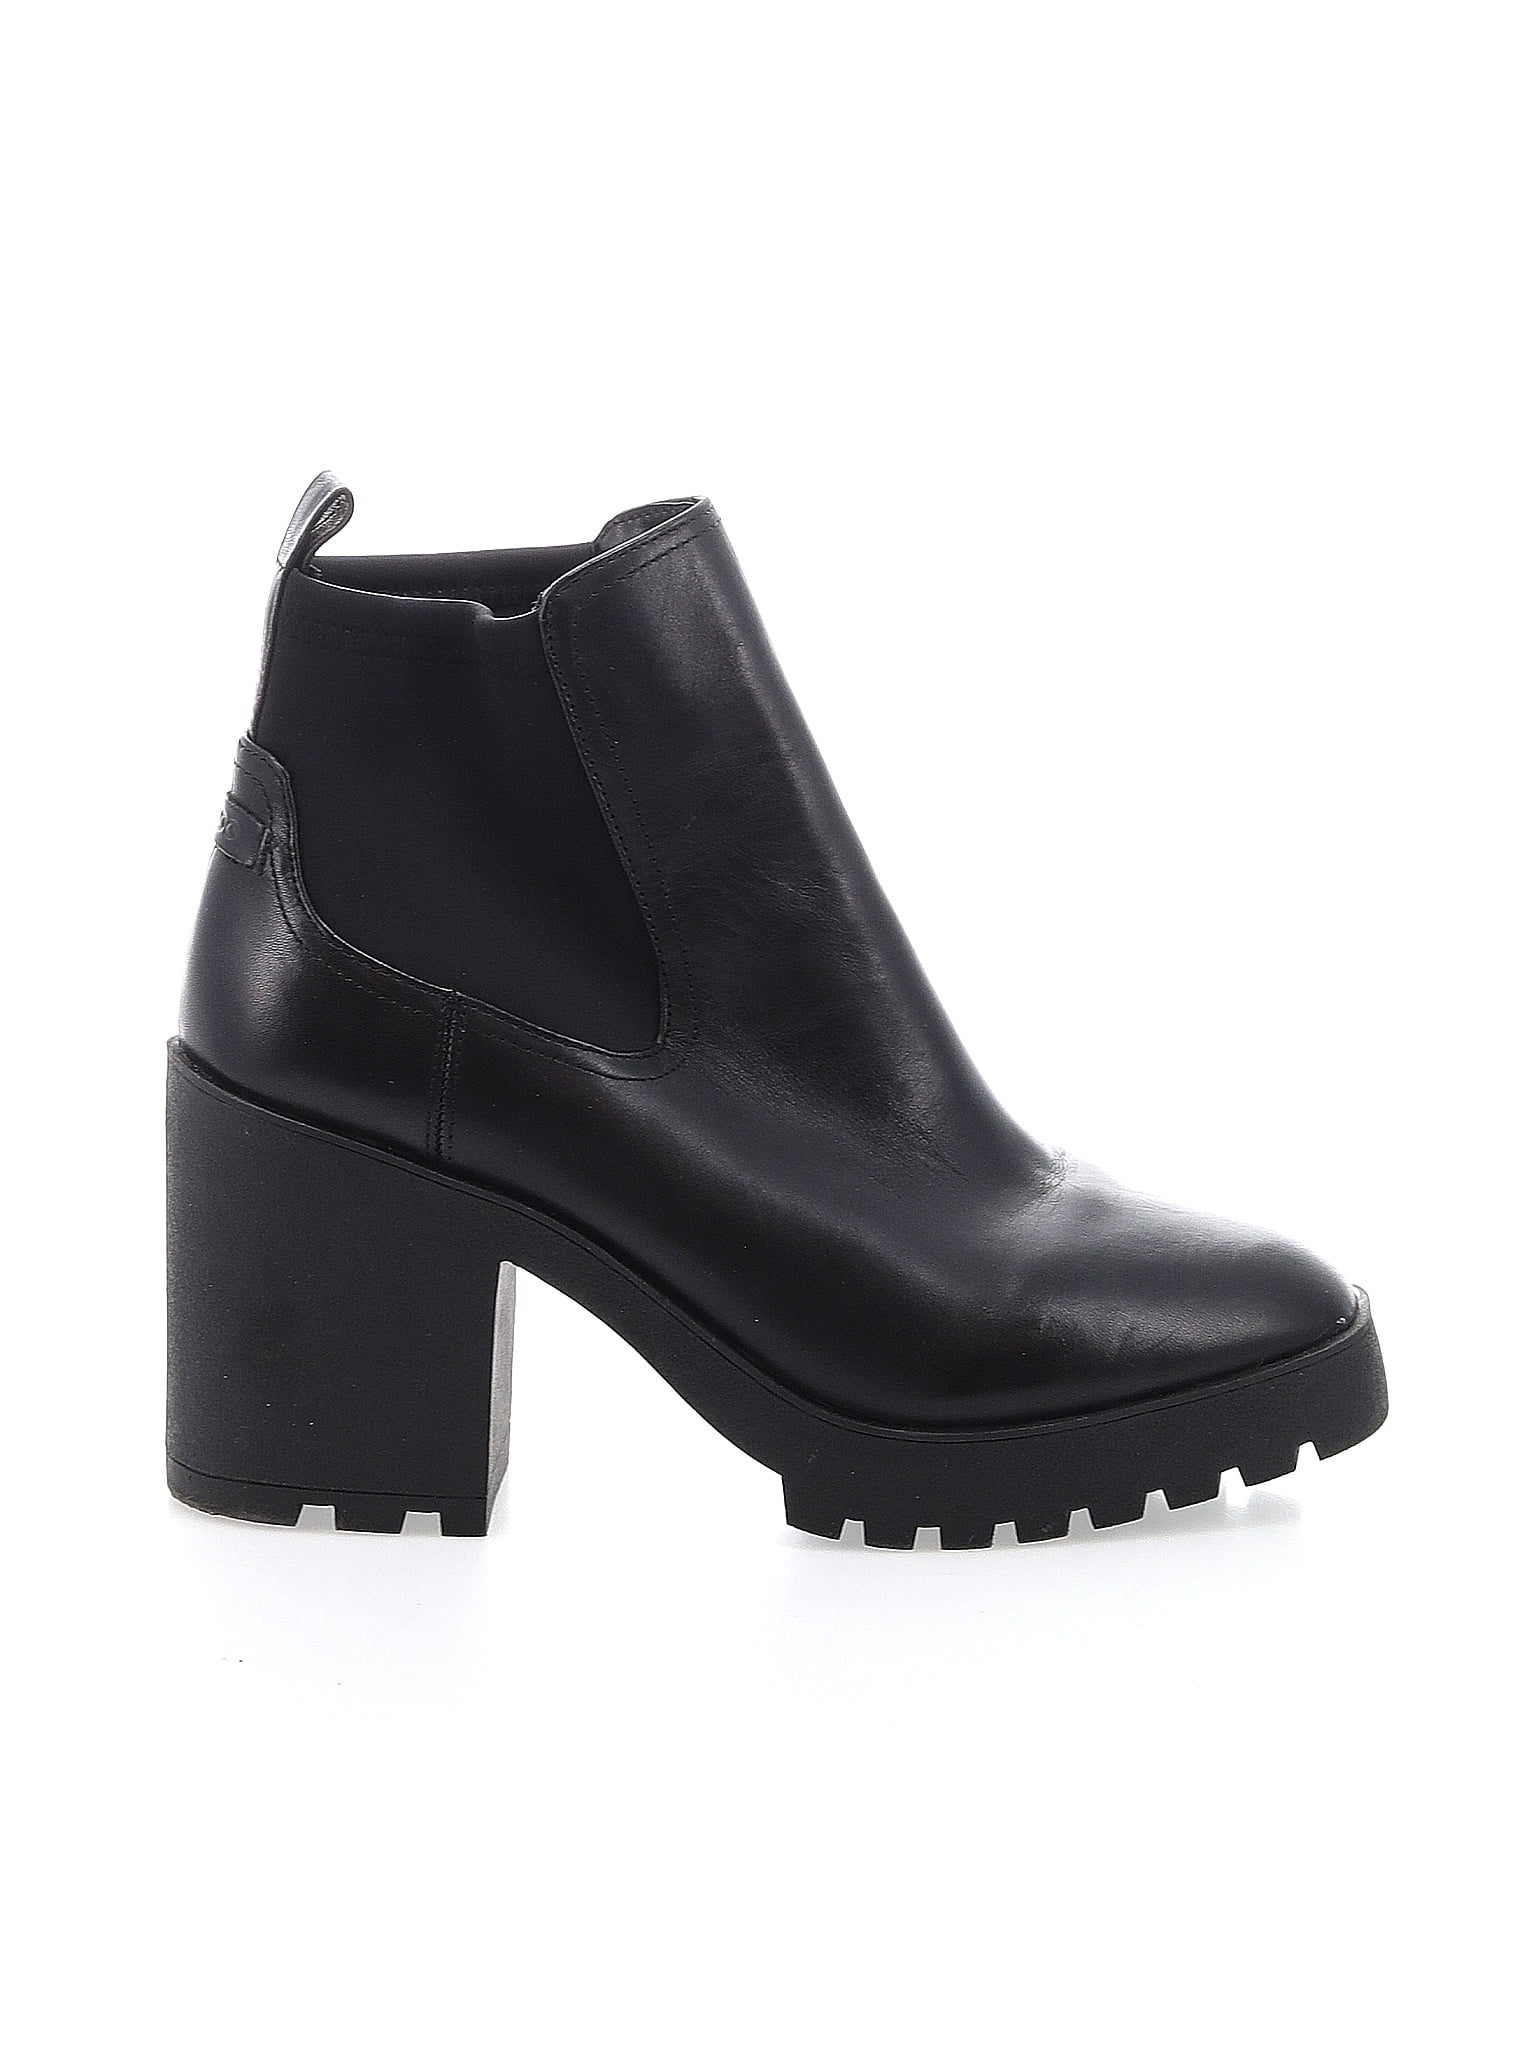 Aldo Solid Black Ankle Boots Size 8 1/2 - 59% off | thredUP